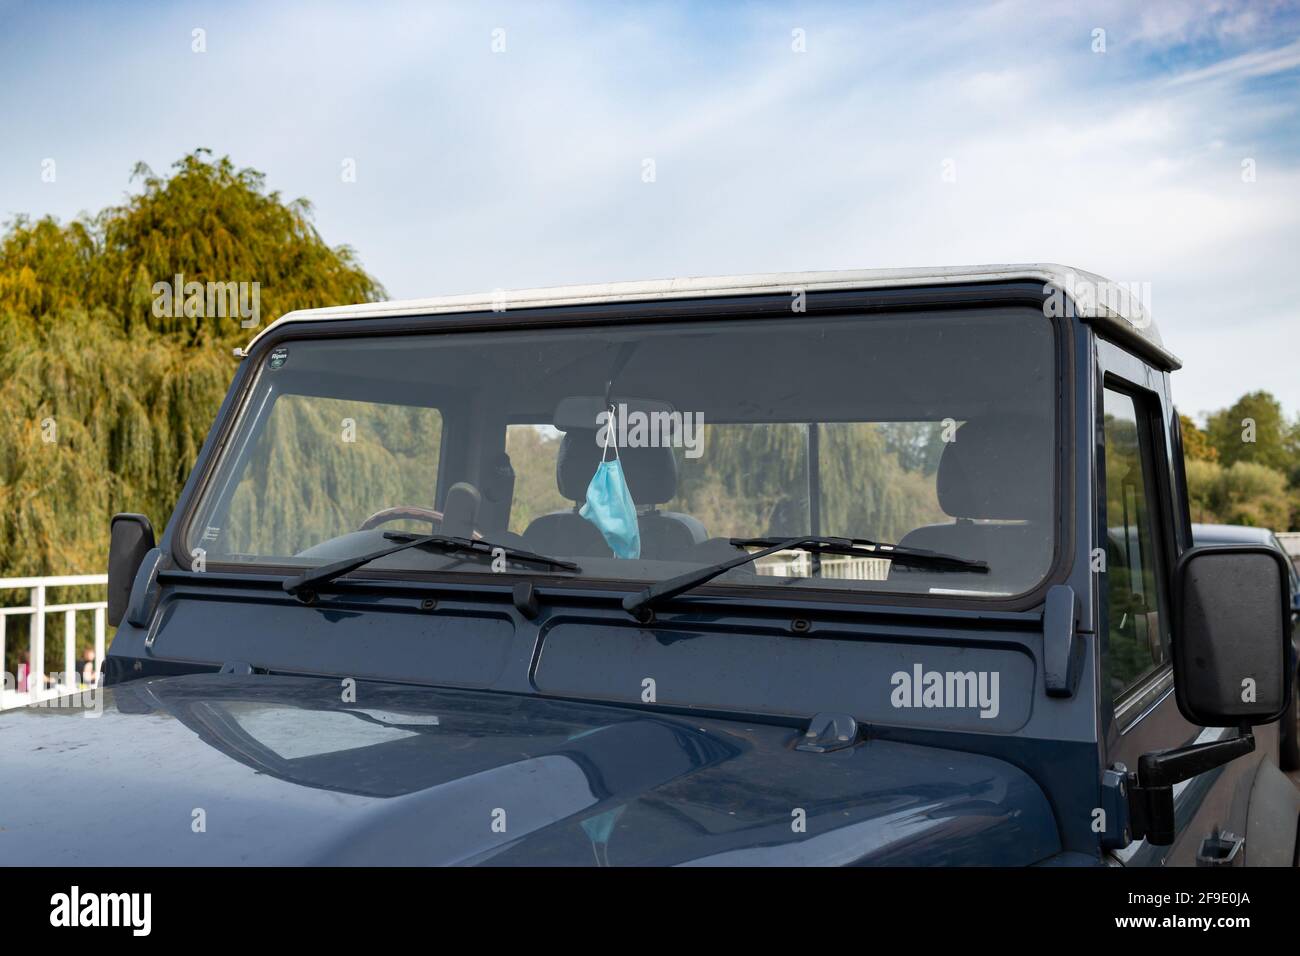 Una maschera facciale è appesa allo specchietto retrovisore di una Land Rover Defender marina. Cambridge, Regno Unito. Foto Stock